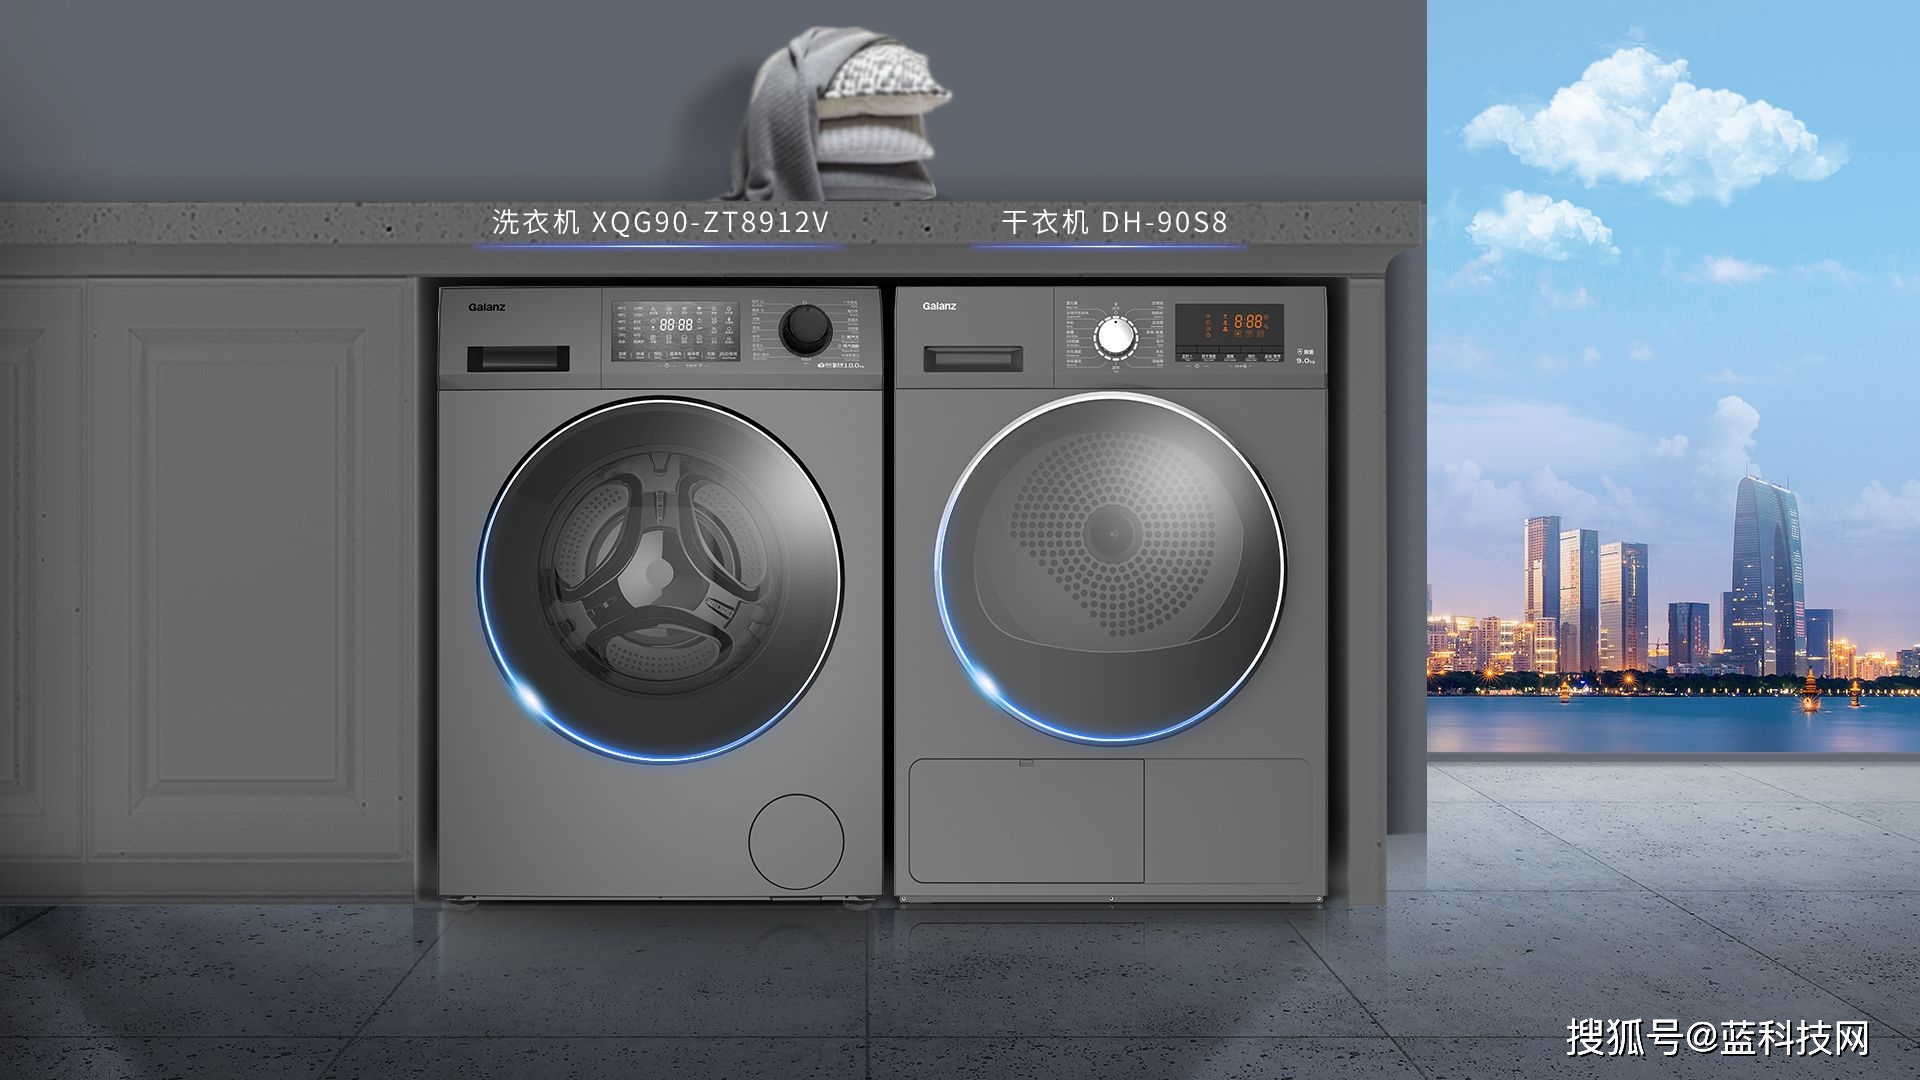 速享品质生活 格兰仕荣获“ 2021中国洗衣机·干衣机行业”三大奖项